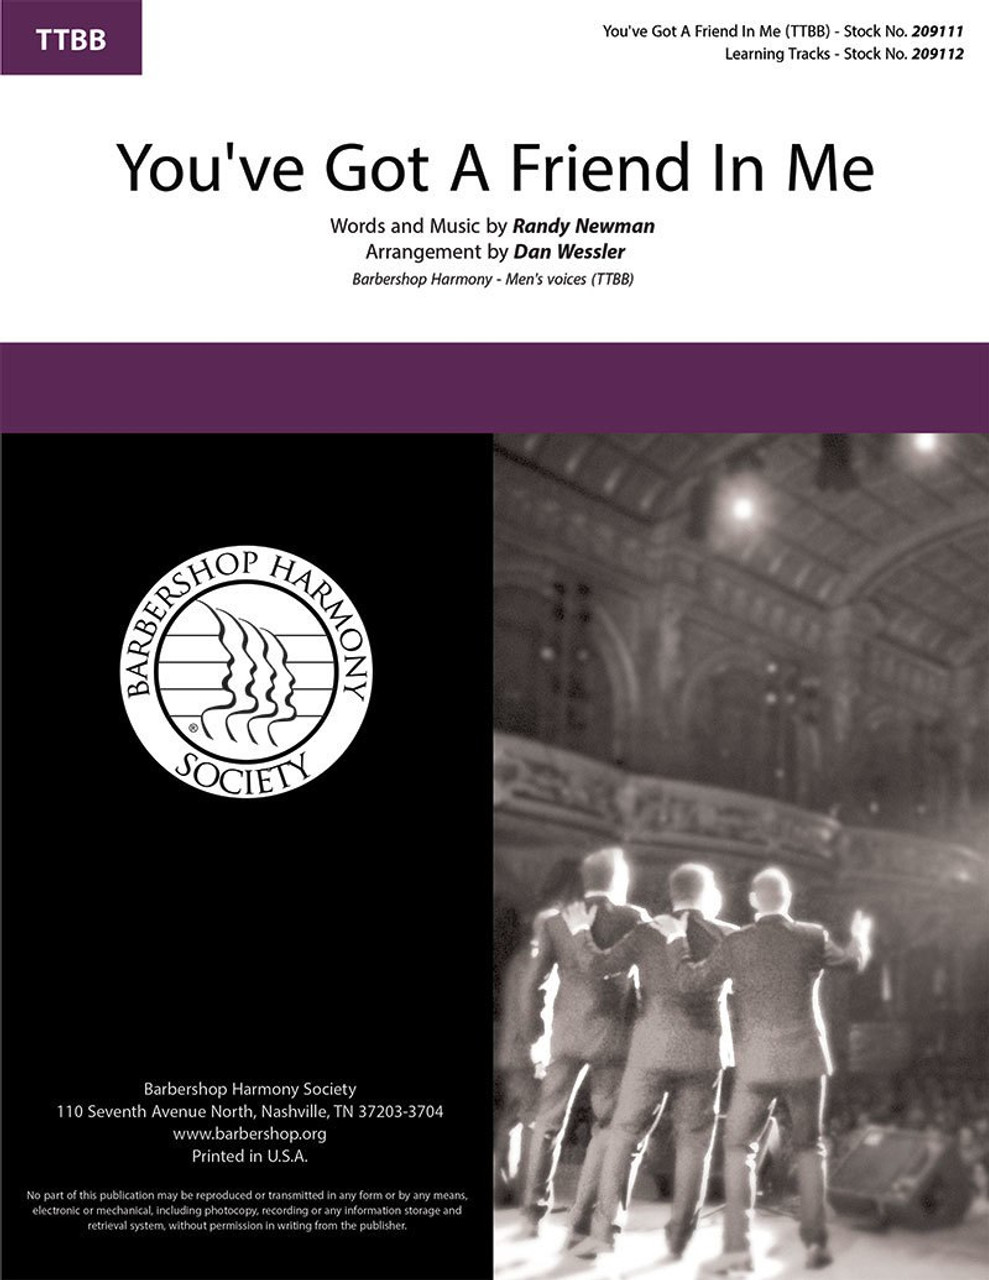 You've Got a Friend In Me (TTBB) (arr. Wessler) - Download